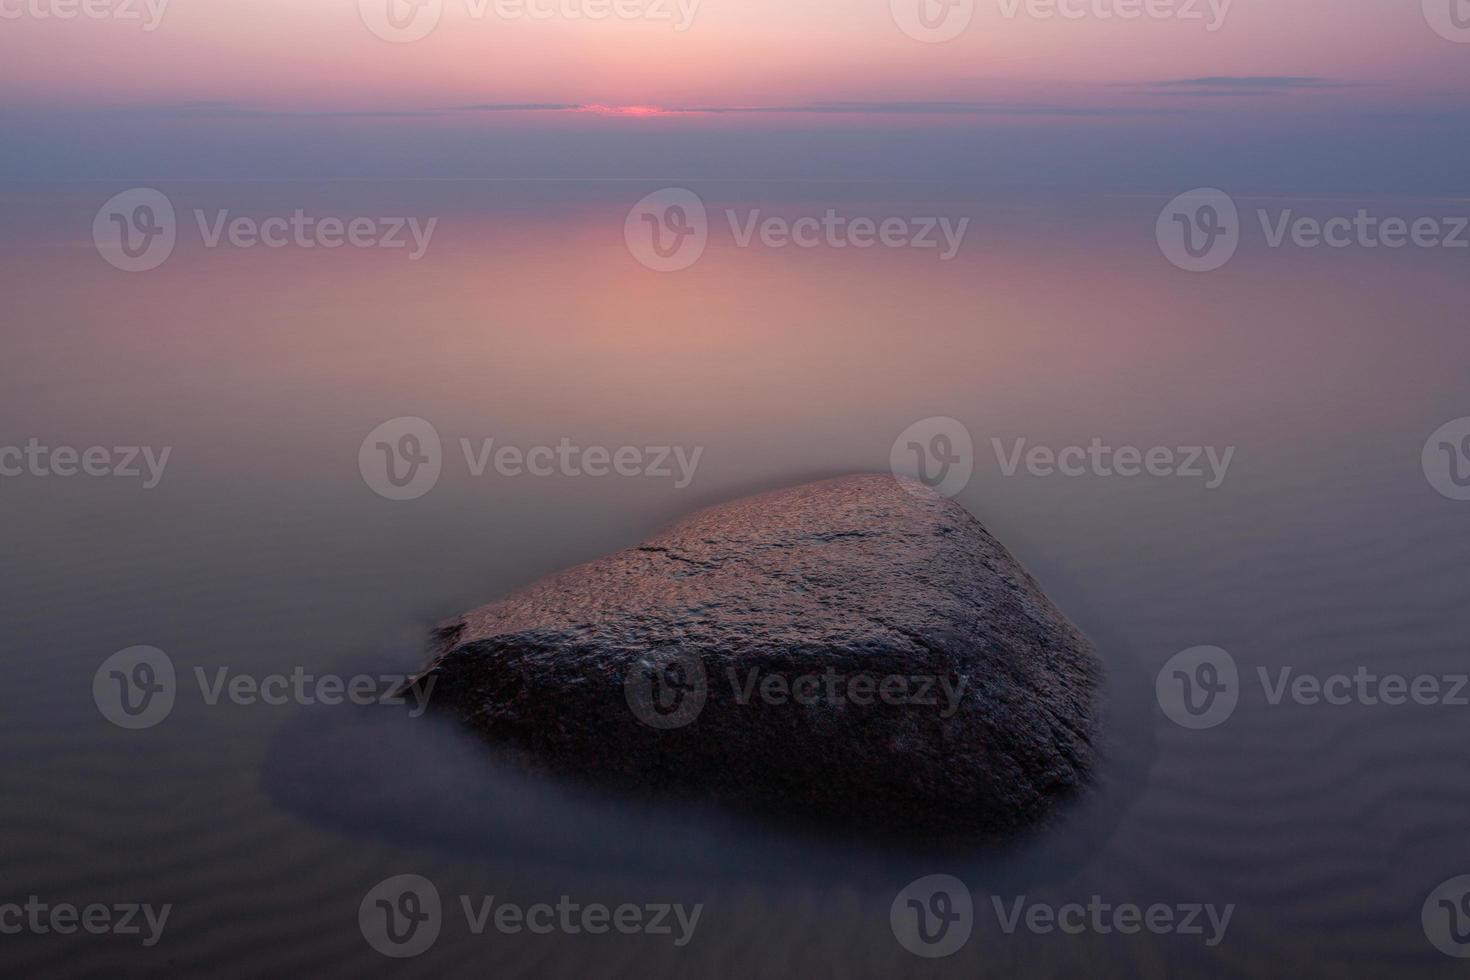 stenen Aan de kust van de Baltisch zee Bij zonsondergang foto